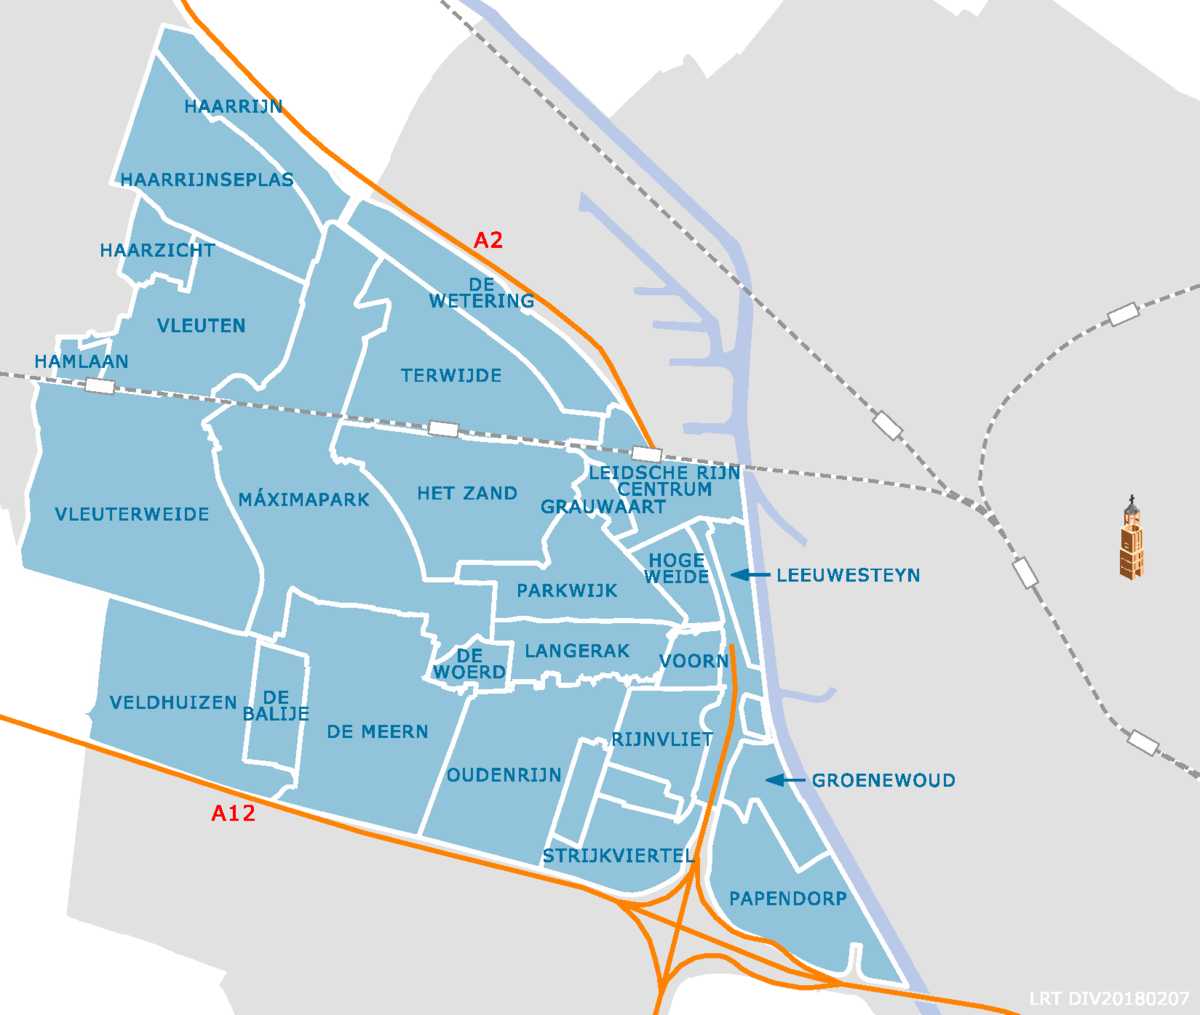 kaart die aangeeft waar de buurten van Leidsche Rijn en Vleuten-De Meern liggen